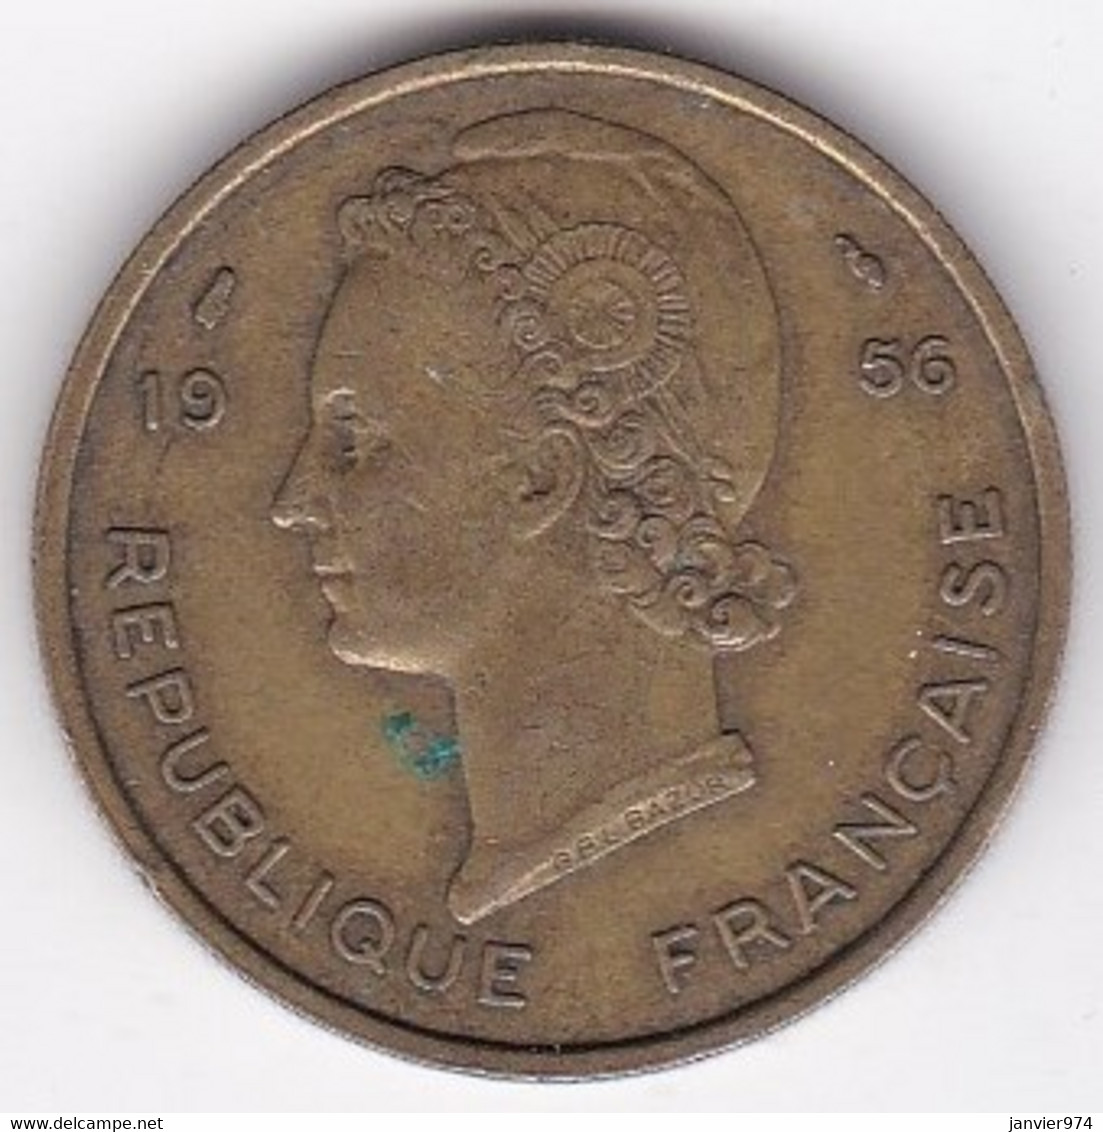 Afrique Occidentale Française 25 Francs 1956 , Bronze Aluminium, LEC# 18 , KM# 7 - Afrique Occidentale Française